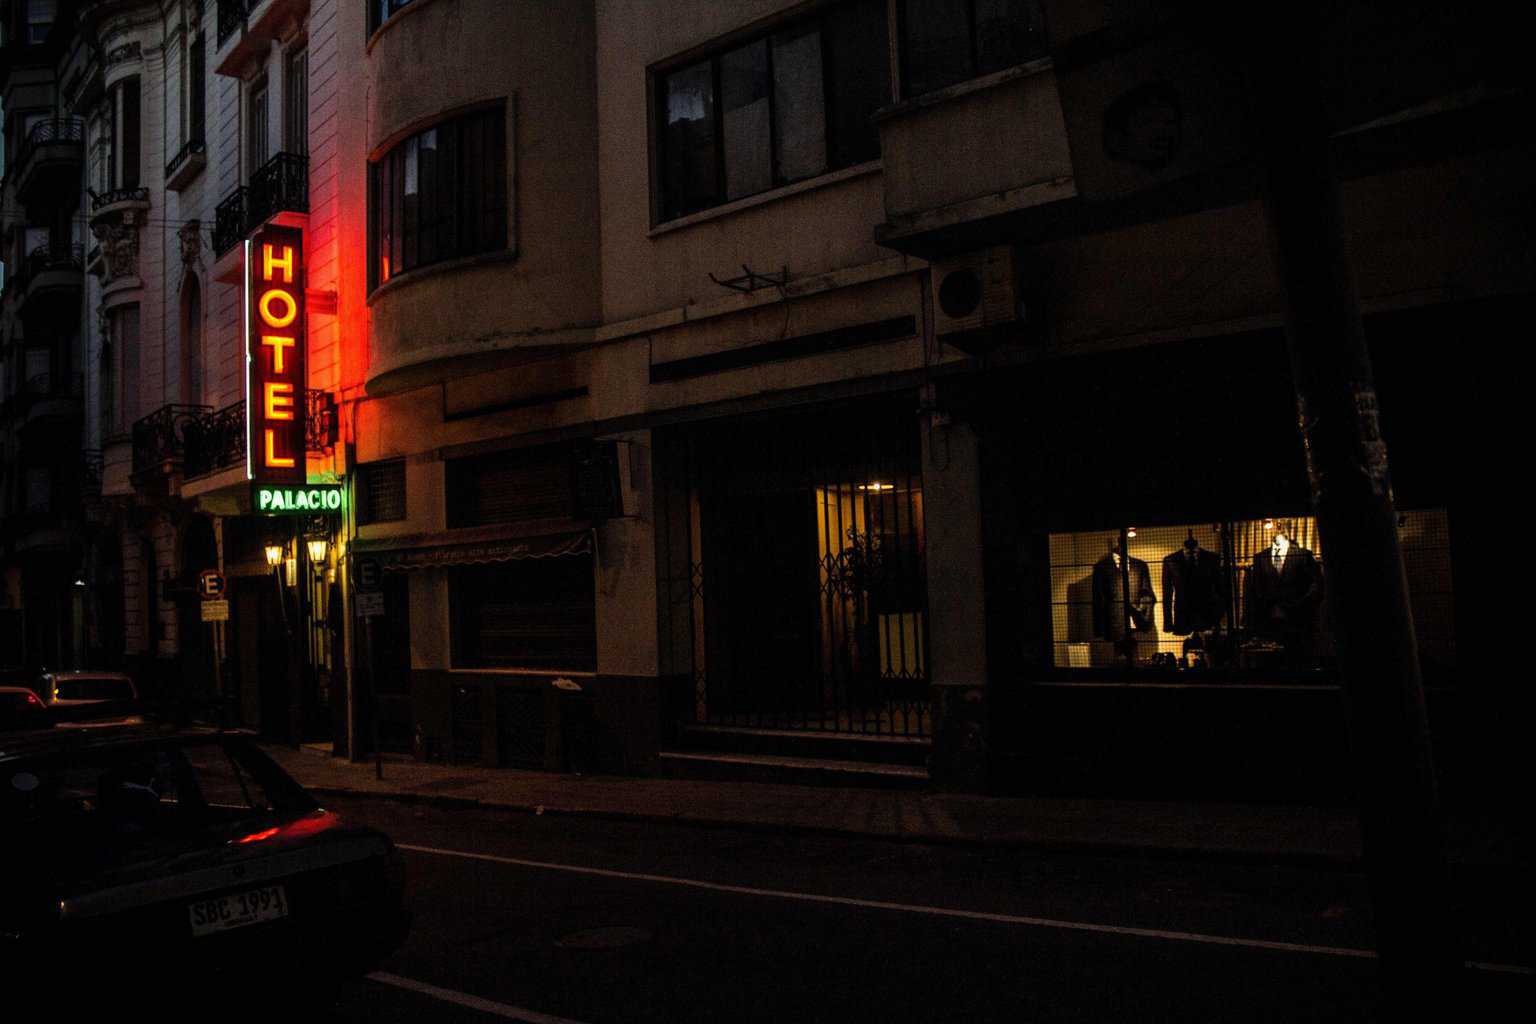 Eine Abendszene mit einem leuchtenden Hotel-Schild.